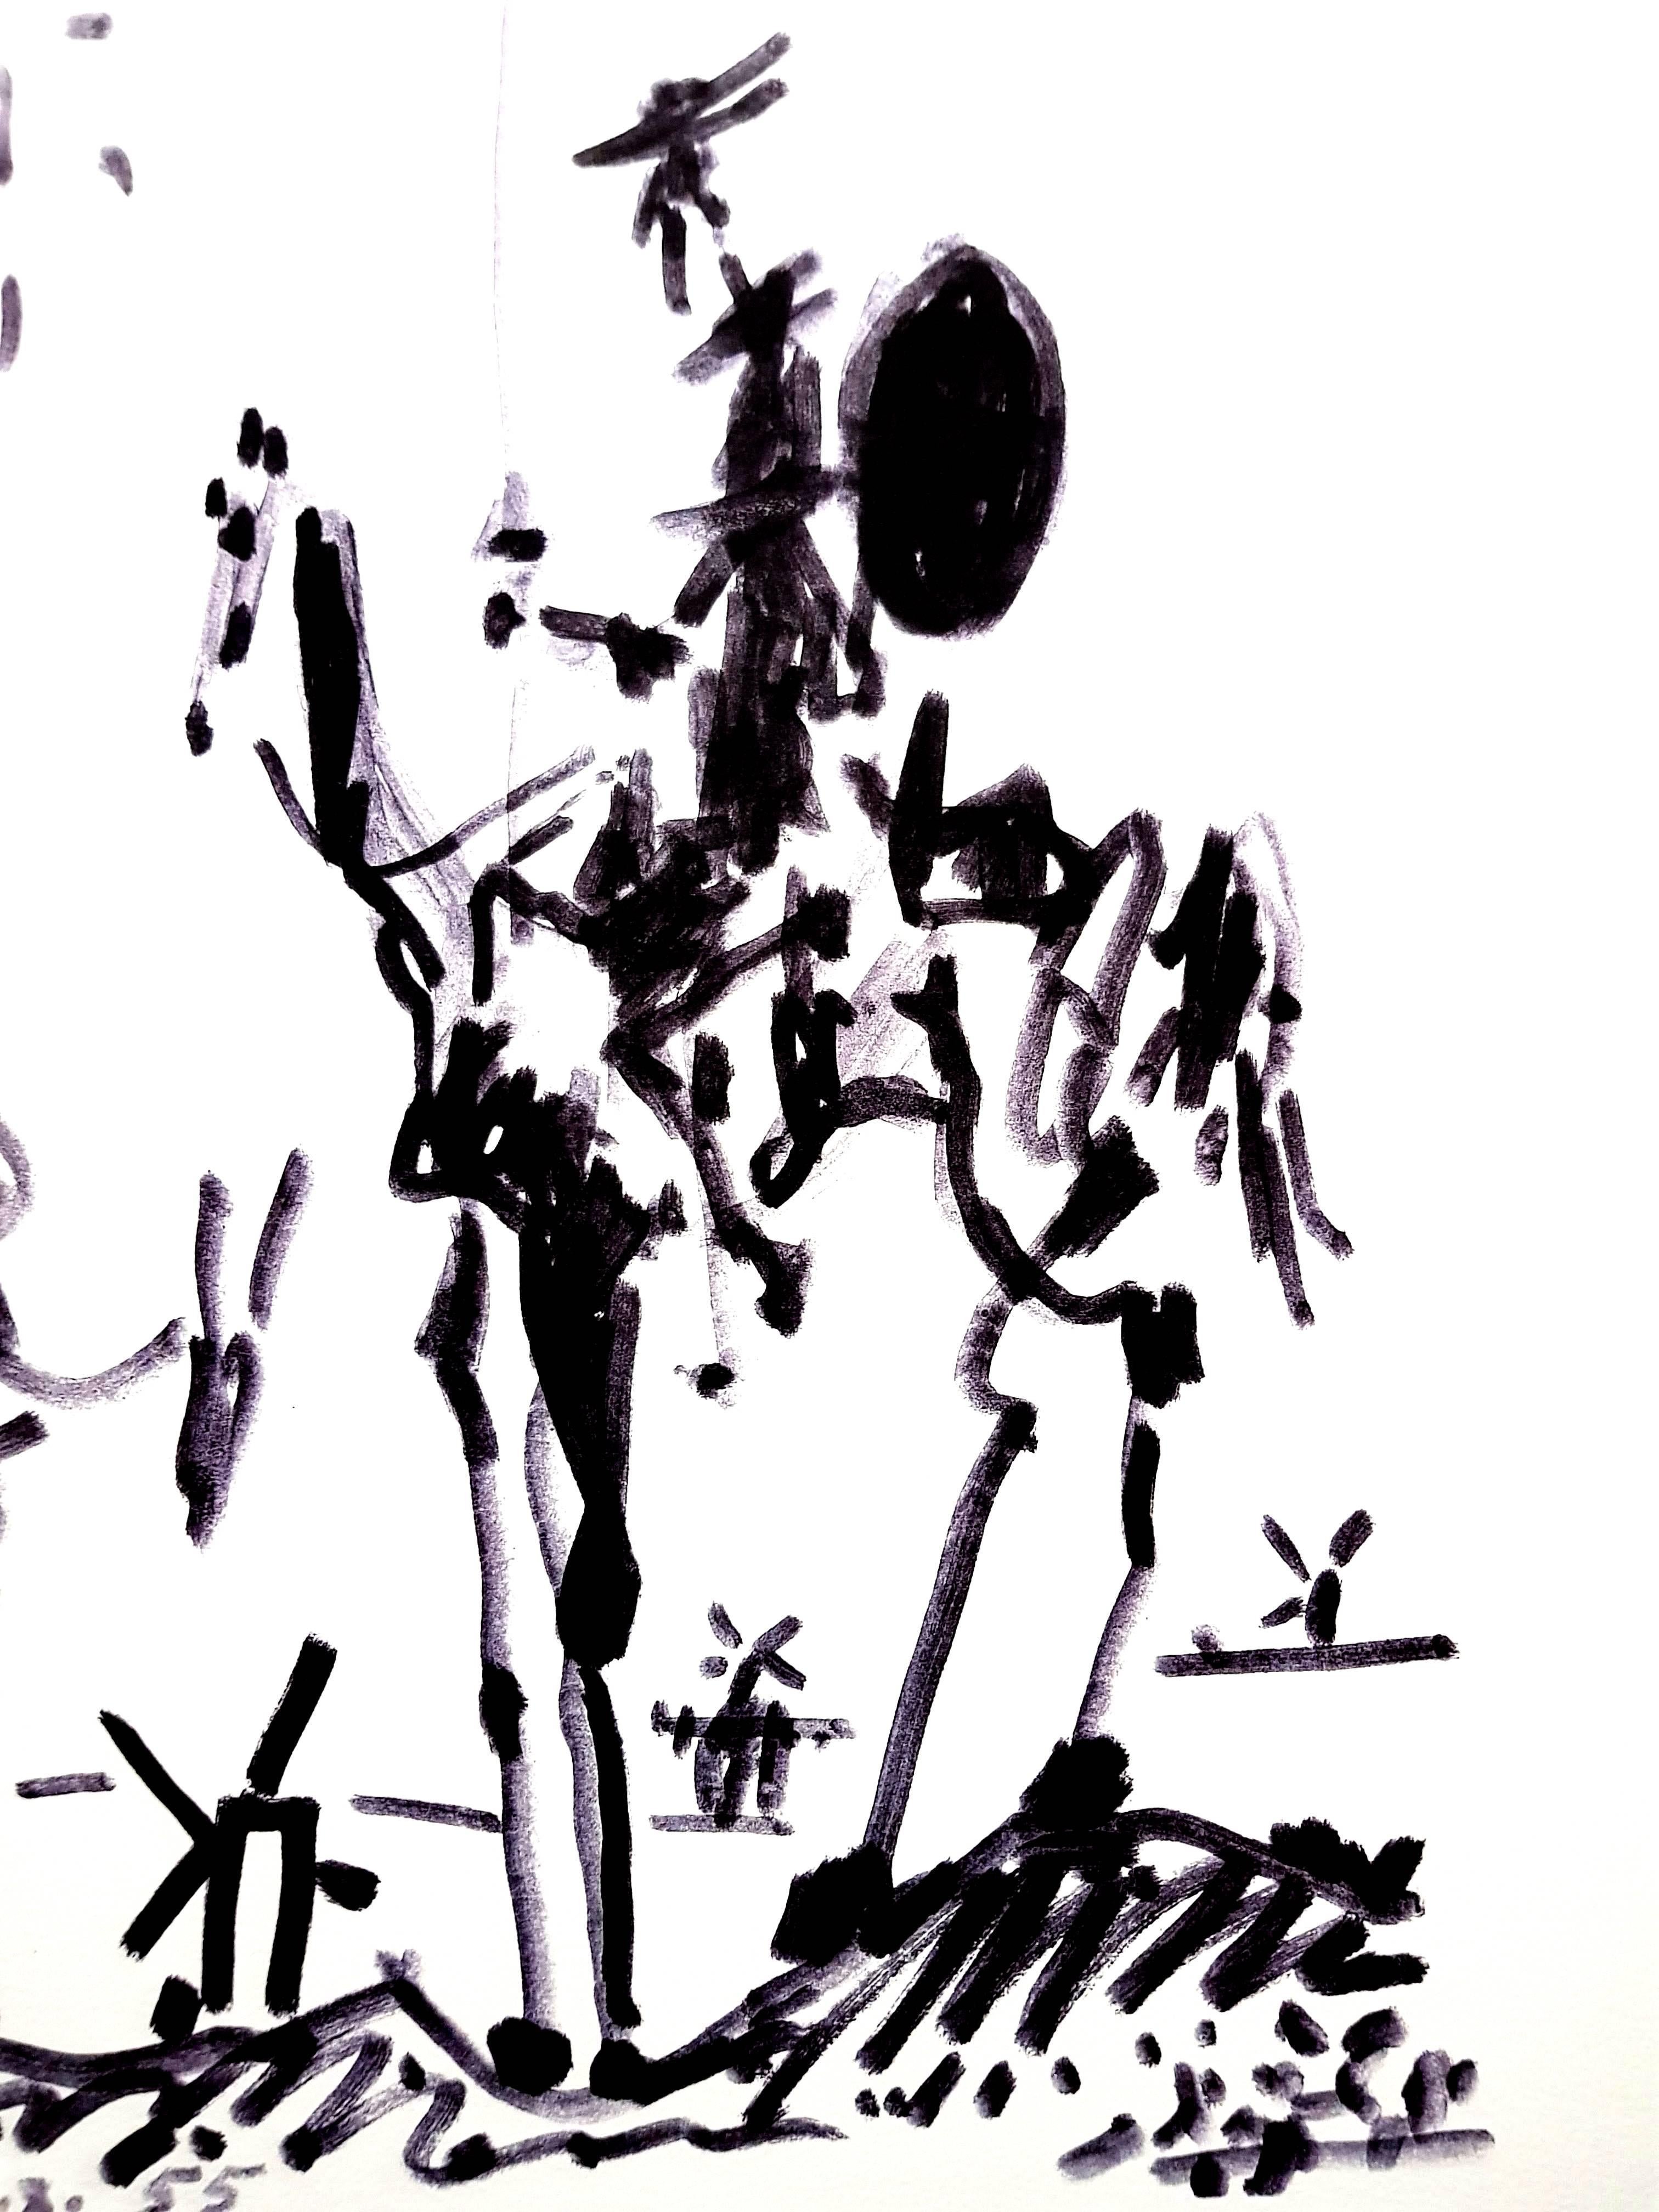 After PABLO PICASSO (1881-1973)
Don Quixote
1955
Dimensions: 65 x 50 cm
Printed signature and date
Edition Succession Picasso, Paris (posthumous reproductive edition)
Editions de la Paix